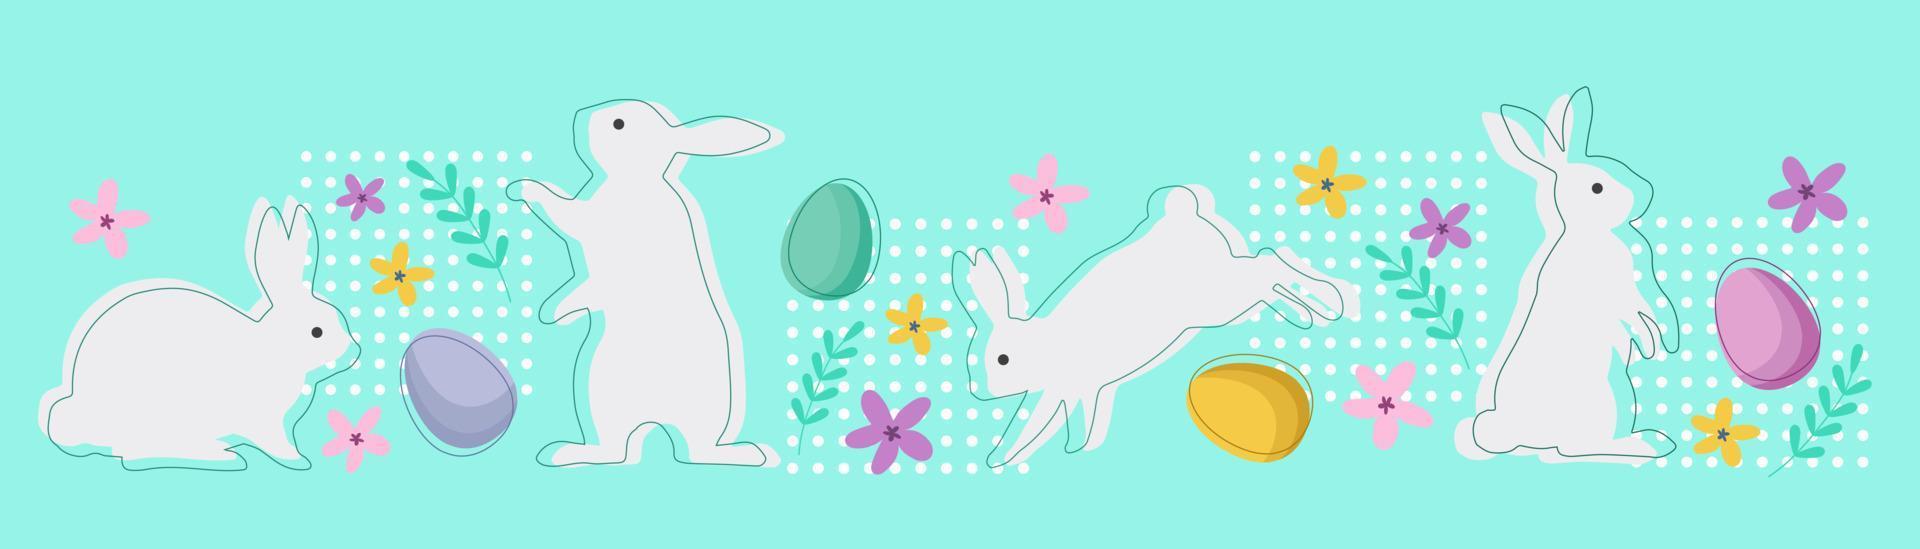 påsk bakgrund med kaniner, ägg och blommor. vektor design.